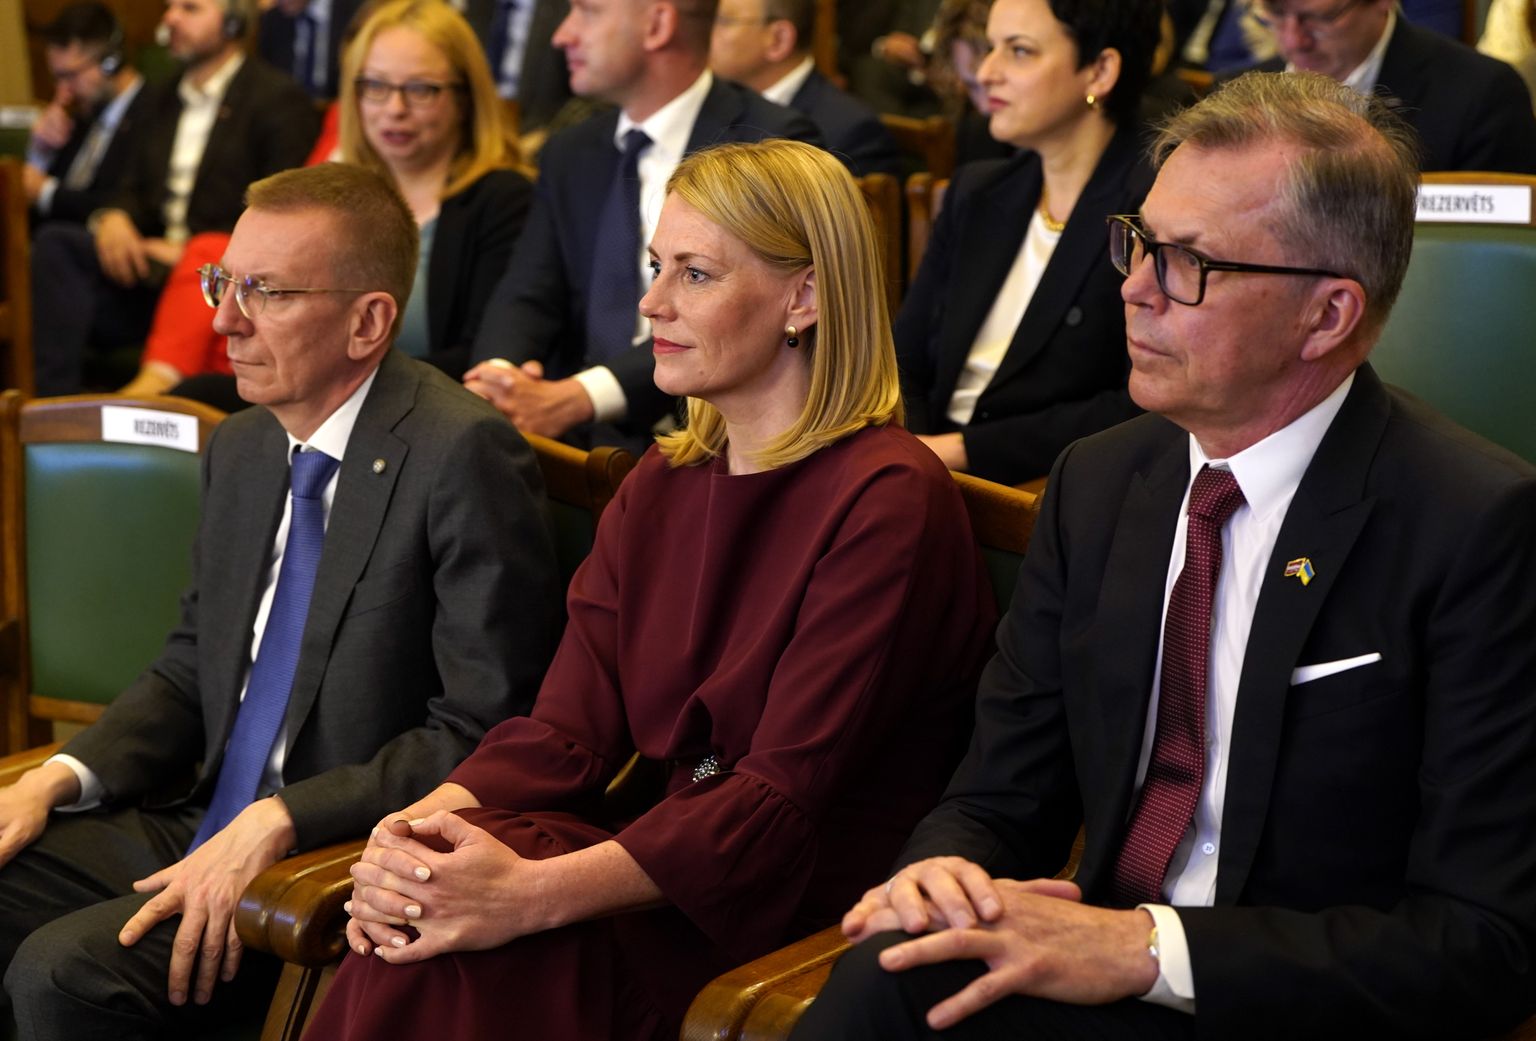 Valsts prezidenta amata kandidāti - ārlietu ministrs Edgars Rinkēvičs (no kreisās), publiskās pārvaldības eksperte Elīna Pinto un uzņēmējs Uldis Pīlēns Saeimas ārkārtas sēdes laikā, kurā notiek Valsts prezidenta vēlēšanas.